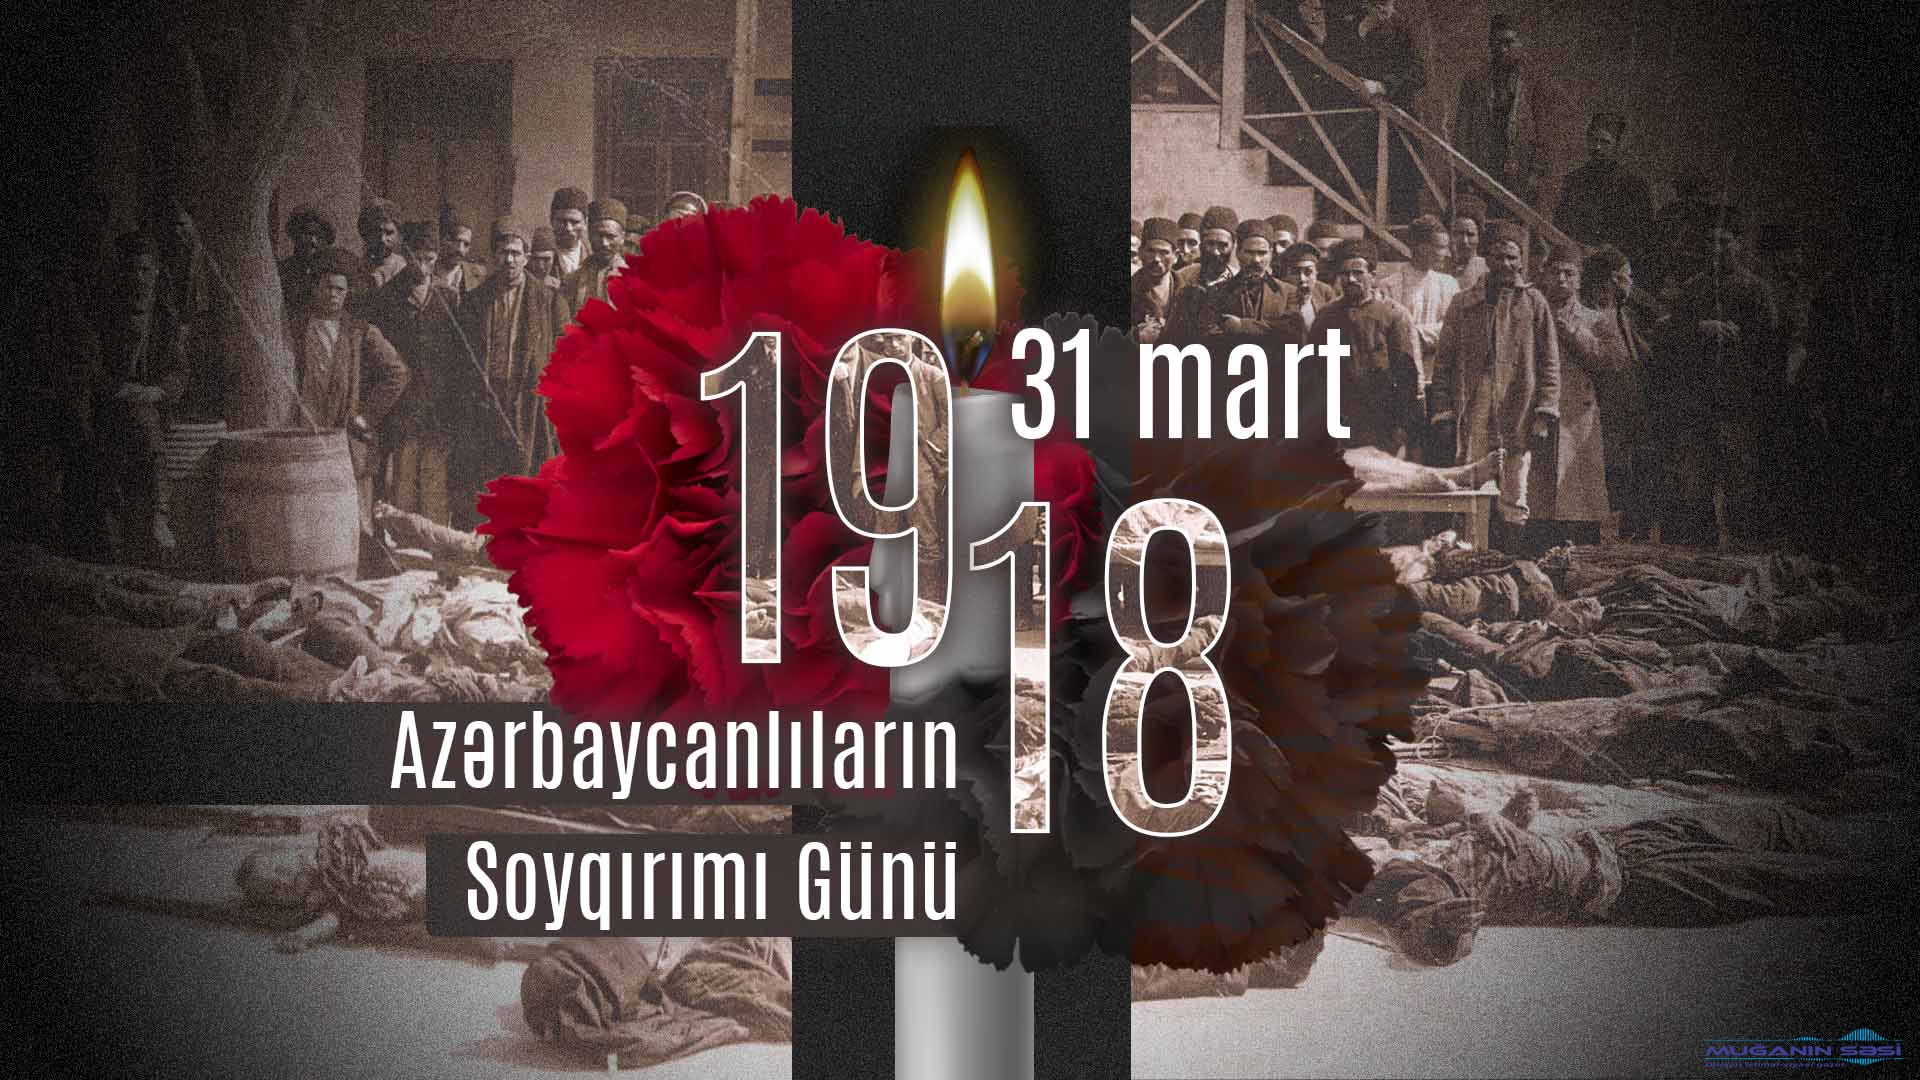 1918-ci ilin mart soyqırımları təkcə Azərbaycan deyil, dünya tarixində törədilən ən qanlı faciələrdən biridir